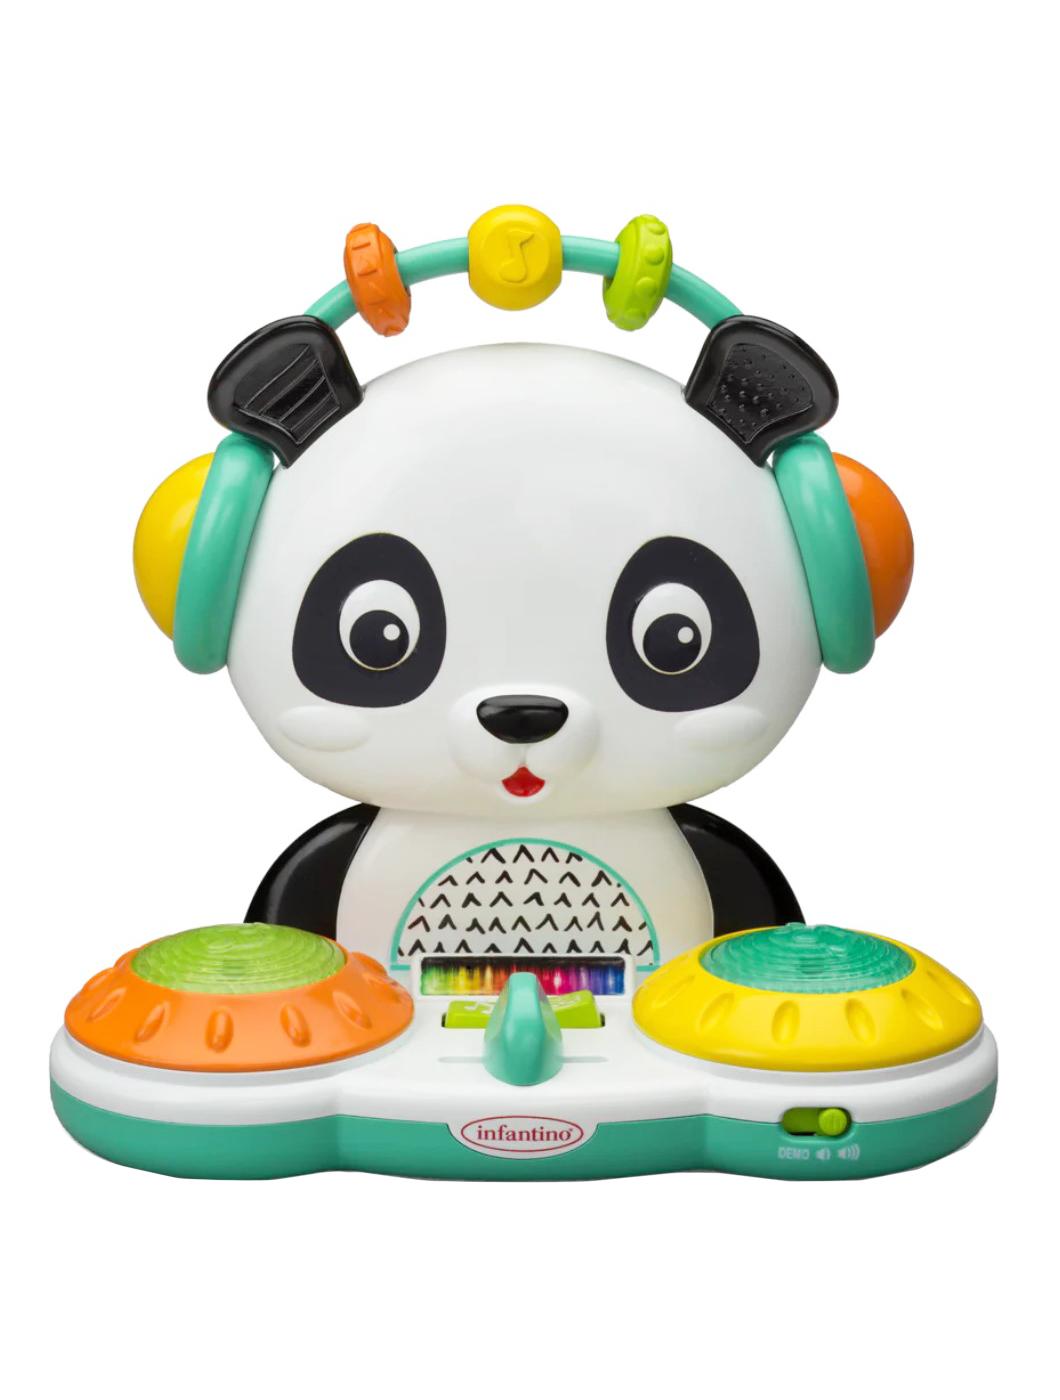 Infantino Spin & Slide DJ Panda; image 1 of 2